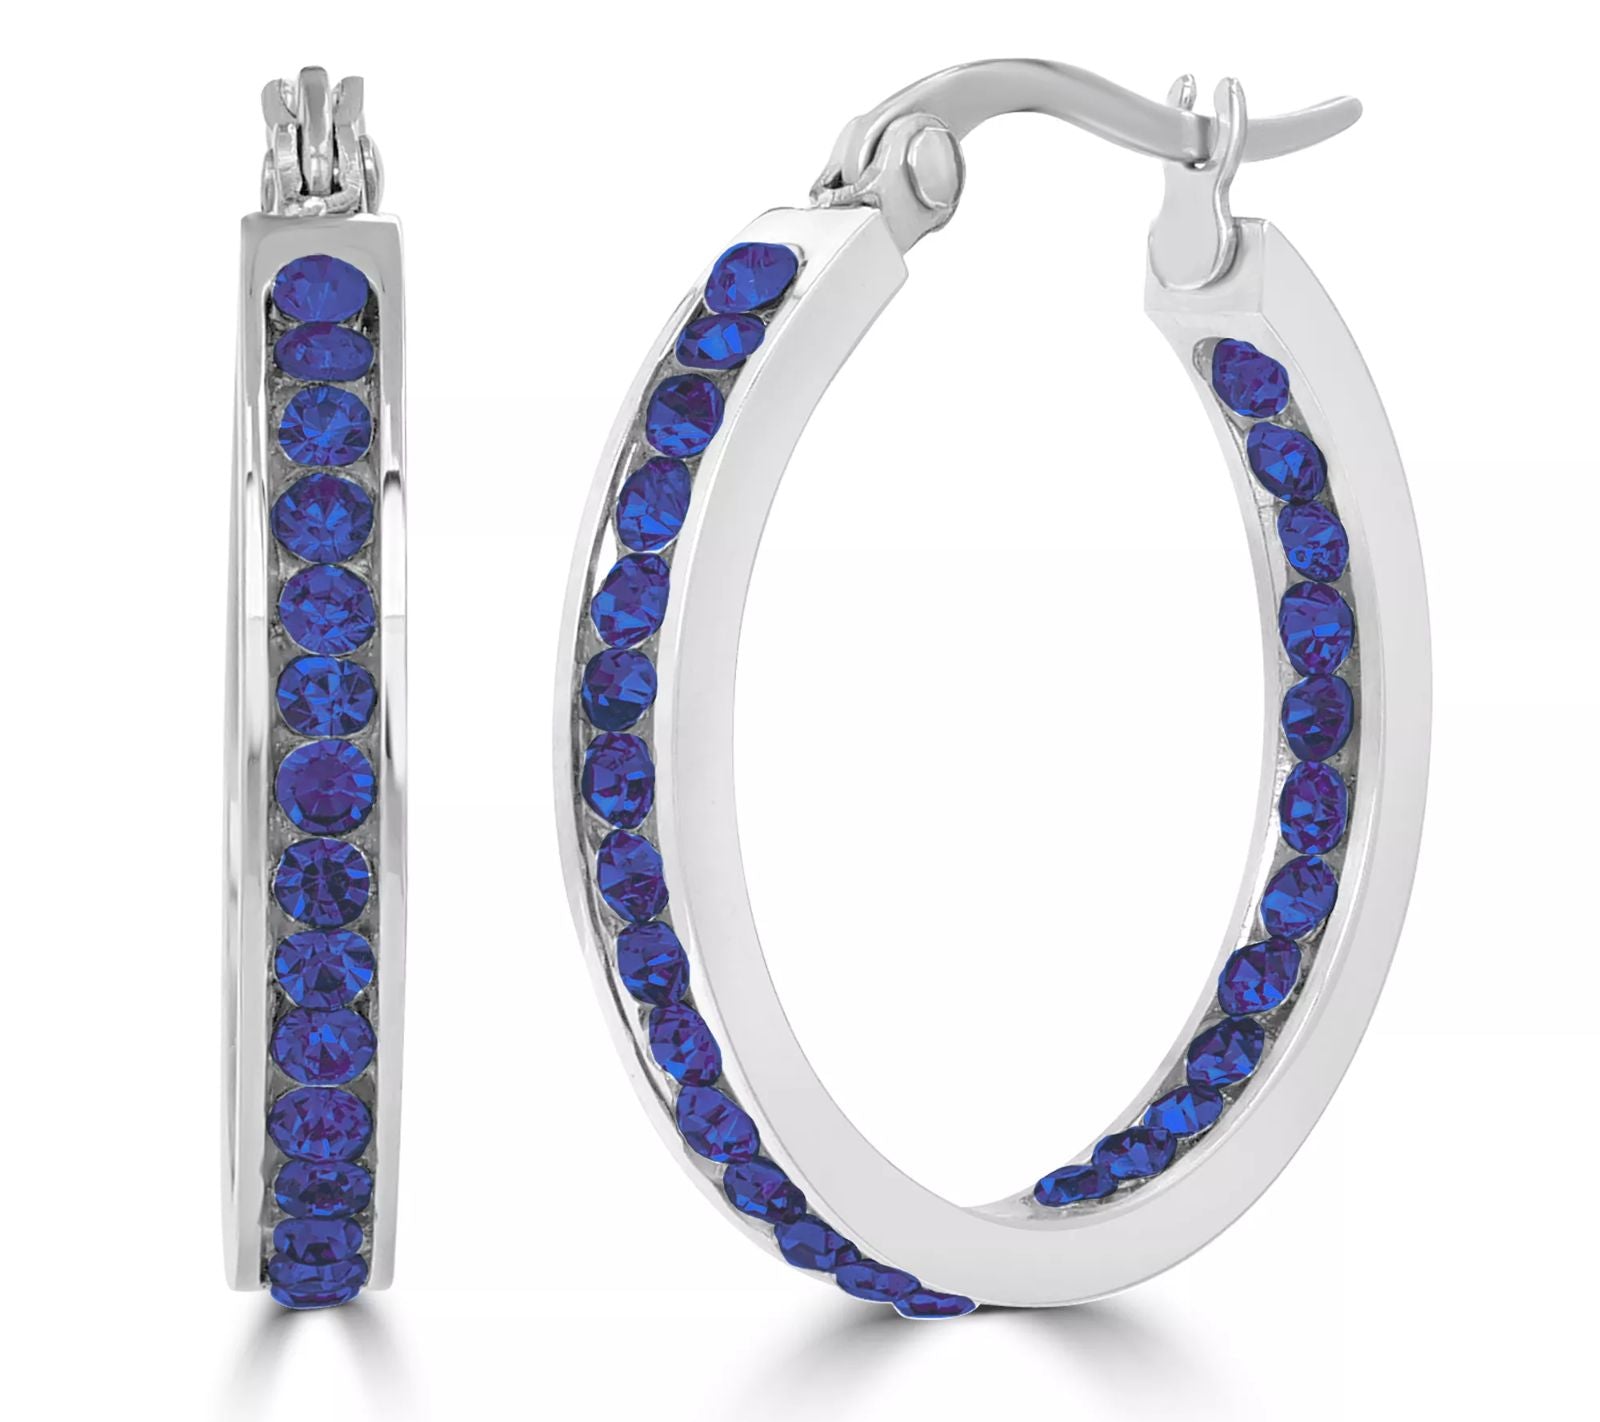 Steel by Design BLUE SAPPHIRE Crystal Birthstone Hoop Earrings STAINLESS STEEL | Earrings